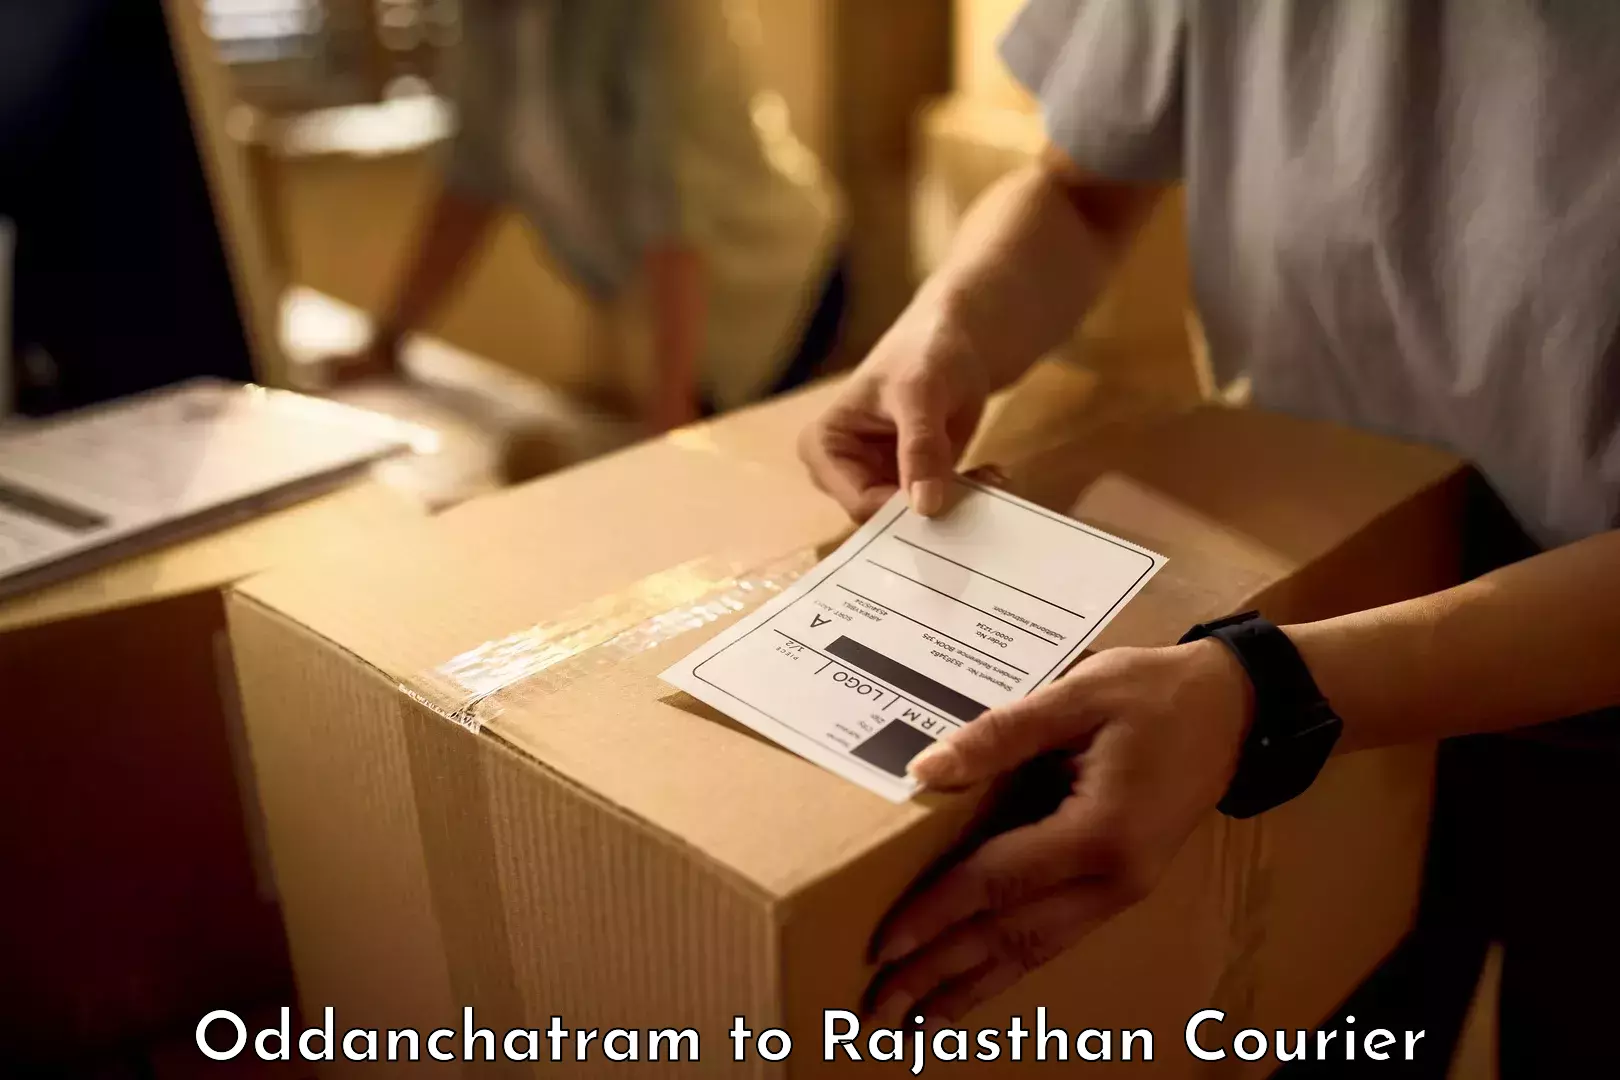 Baggage delivery management Oddanchatram to Nainwa